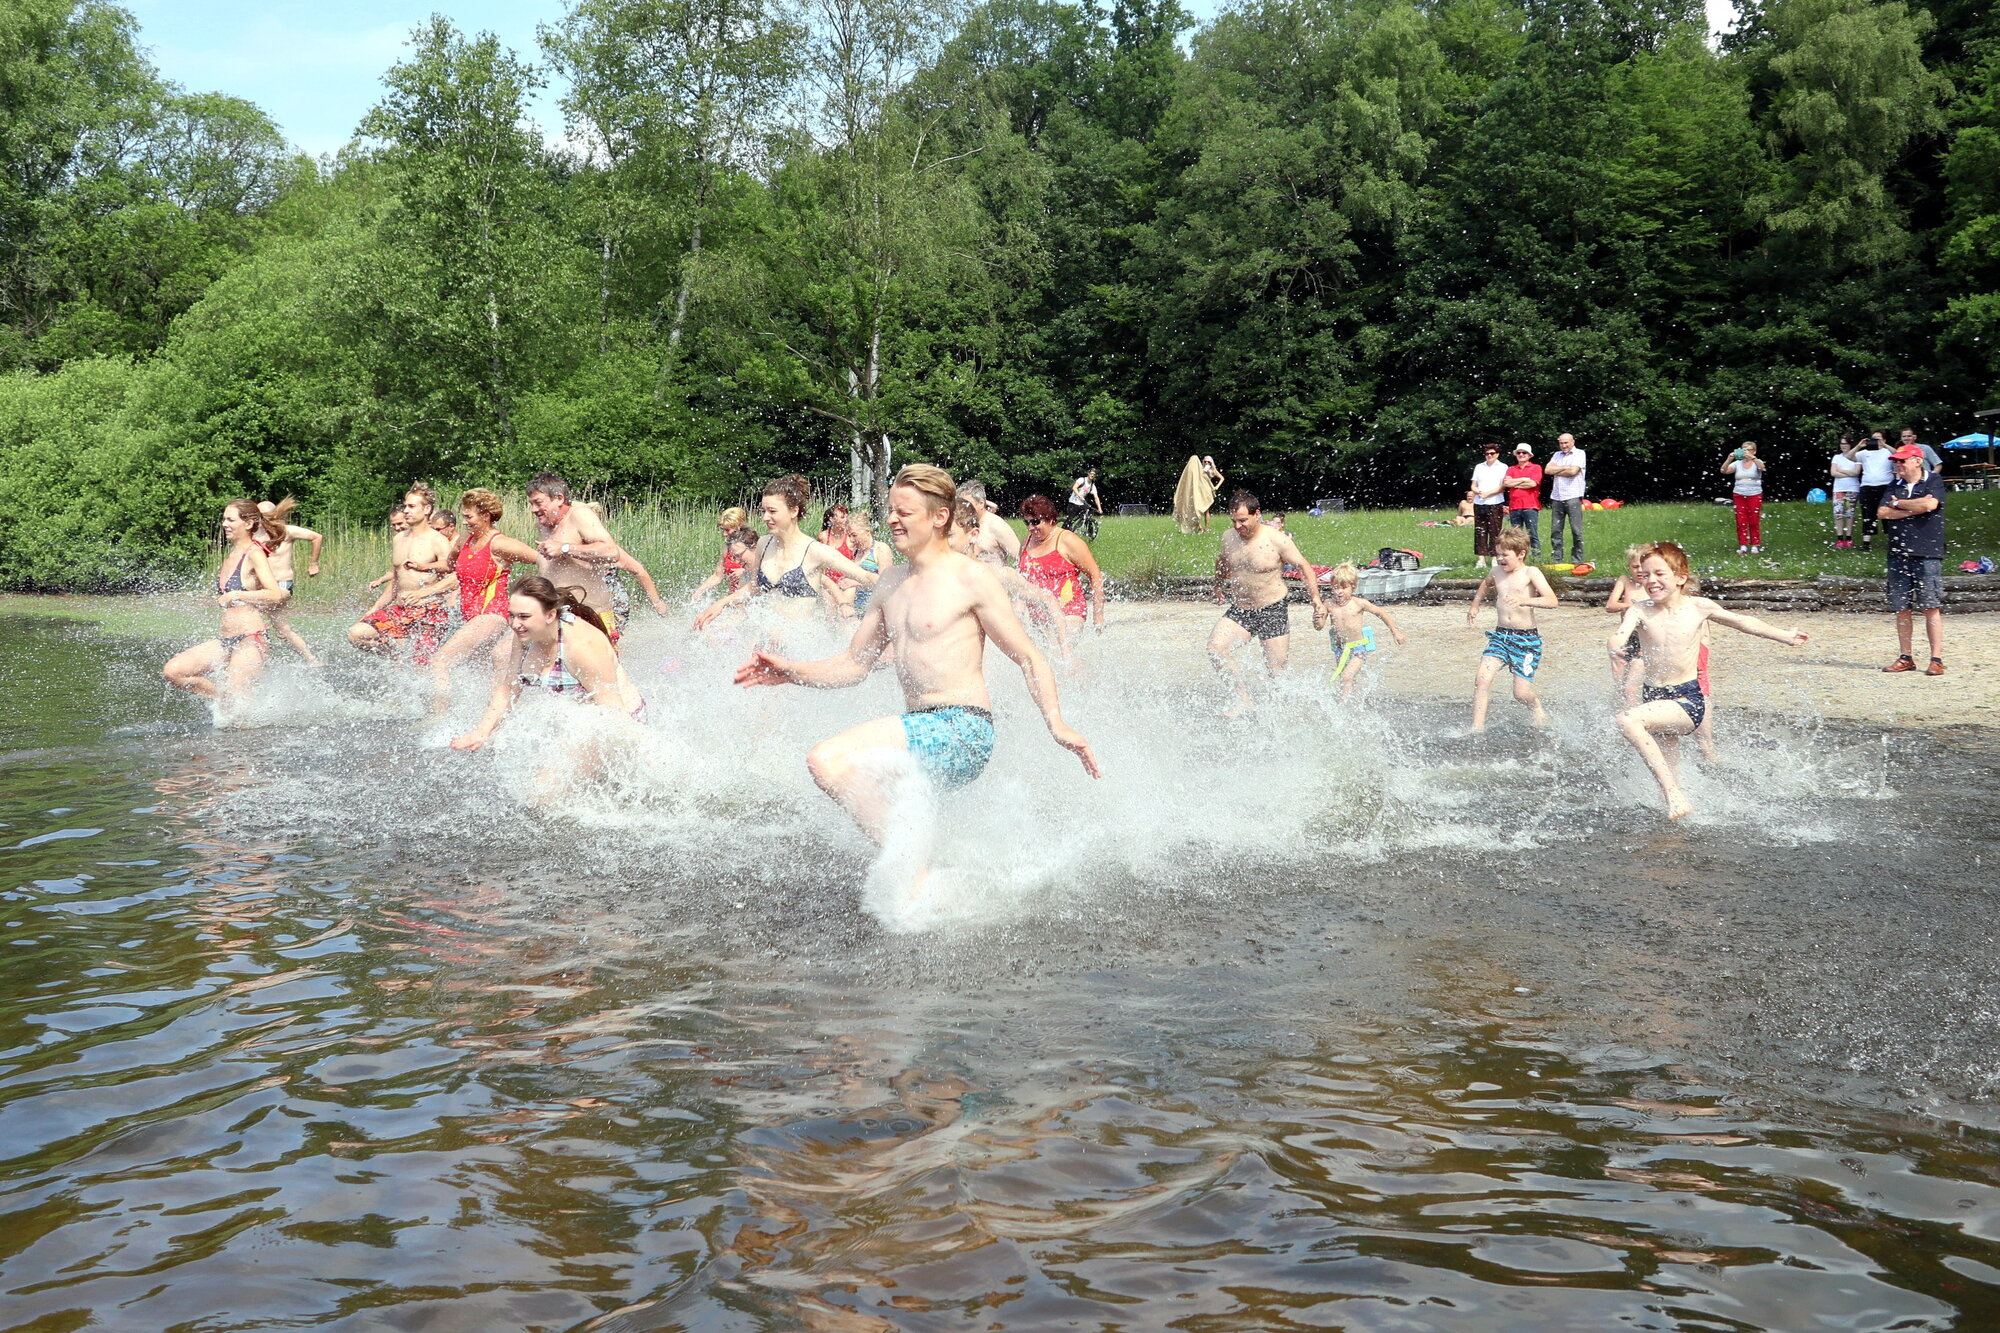 Menschen in Badekleidung stürmen gemeinsam in einen See